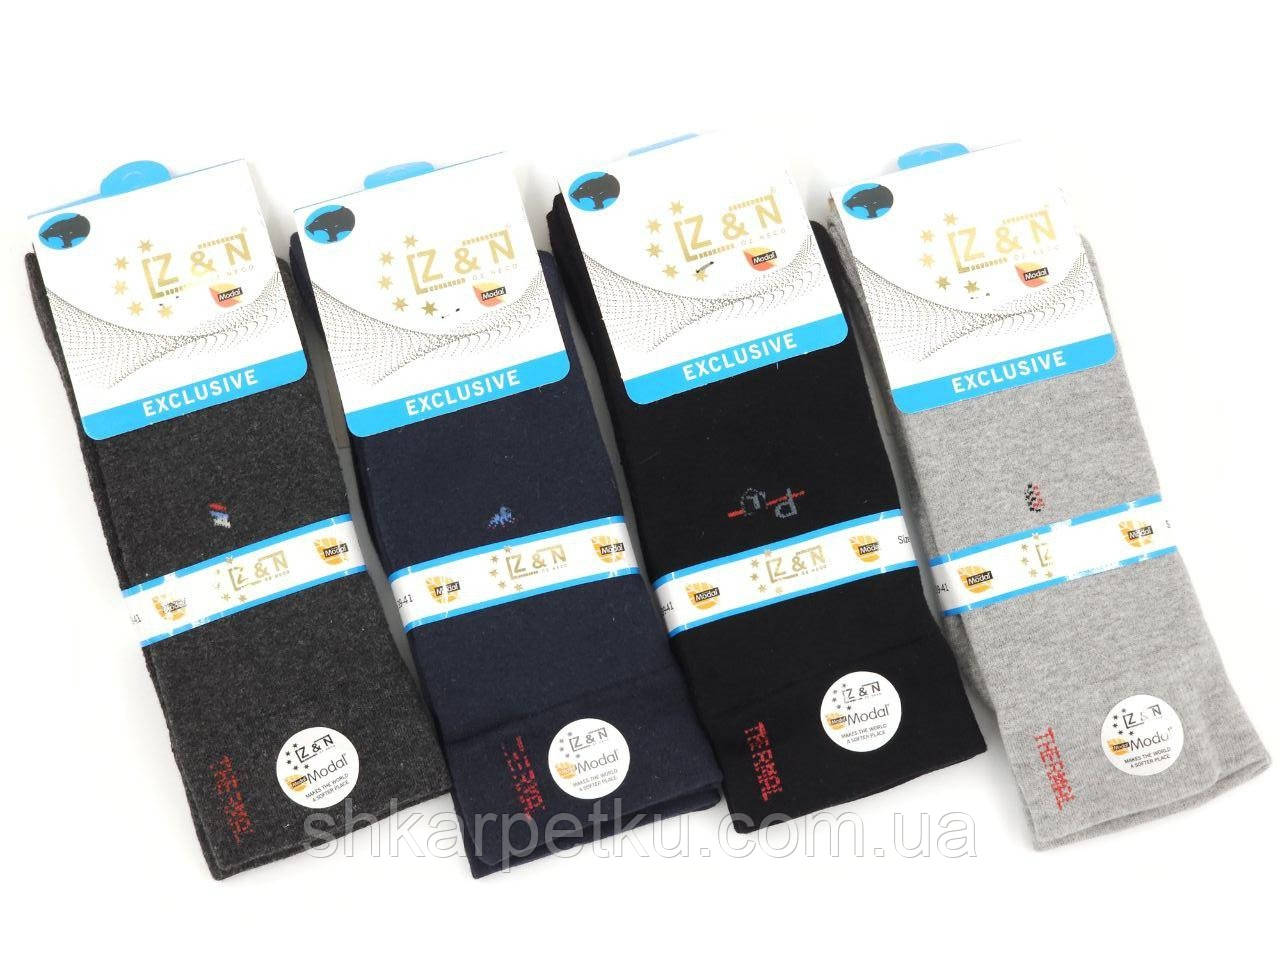 Чоловічі махрові шкарпетки високі якісні модал Z&N, розмір 41-44, 6 пар\уп. асорті 39-42